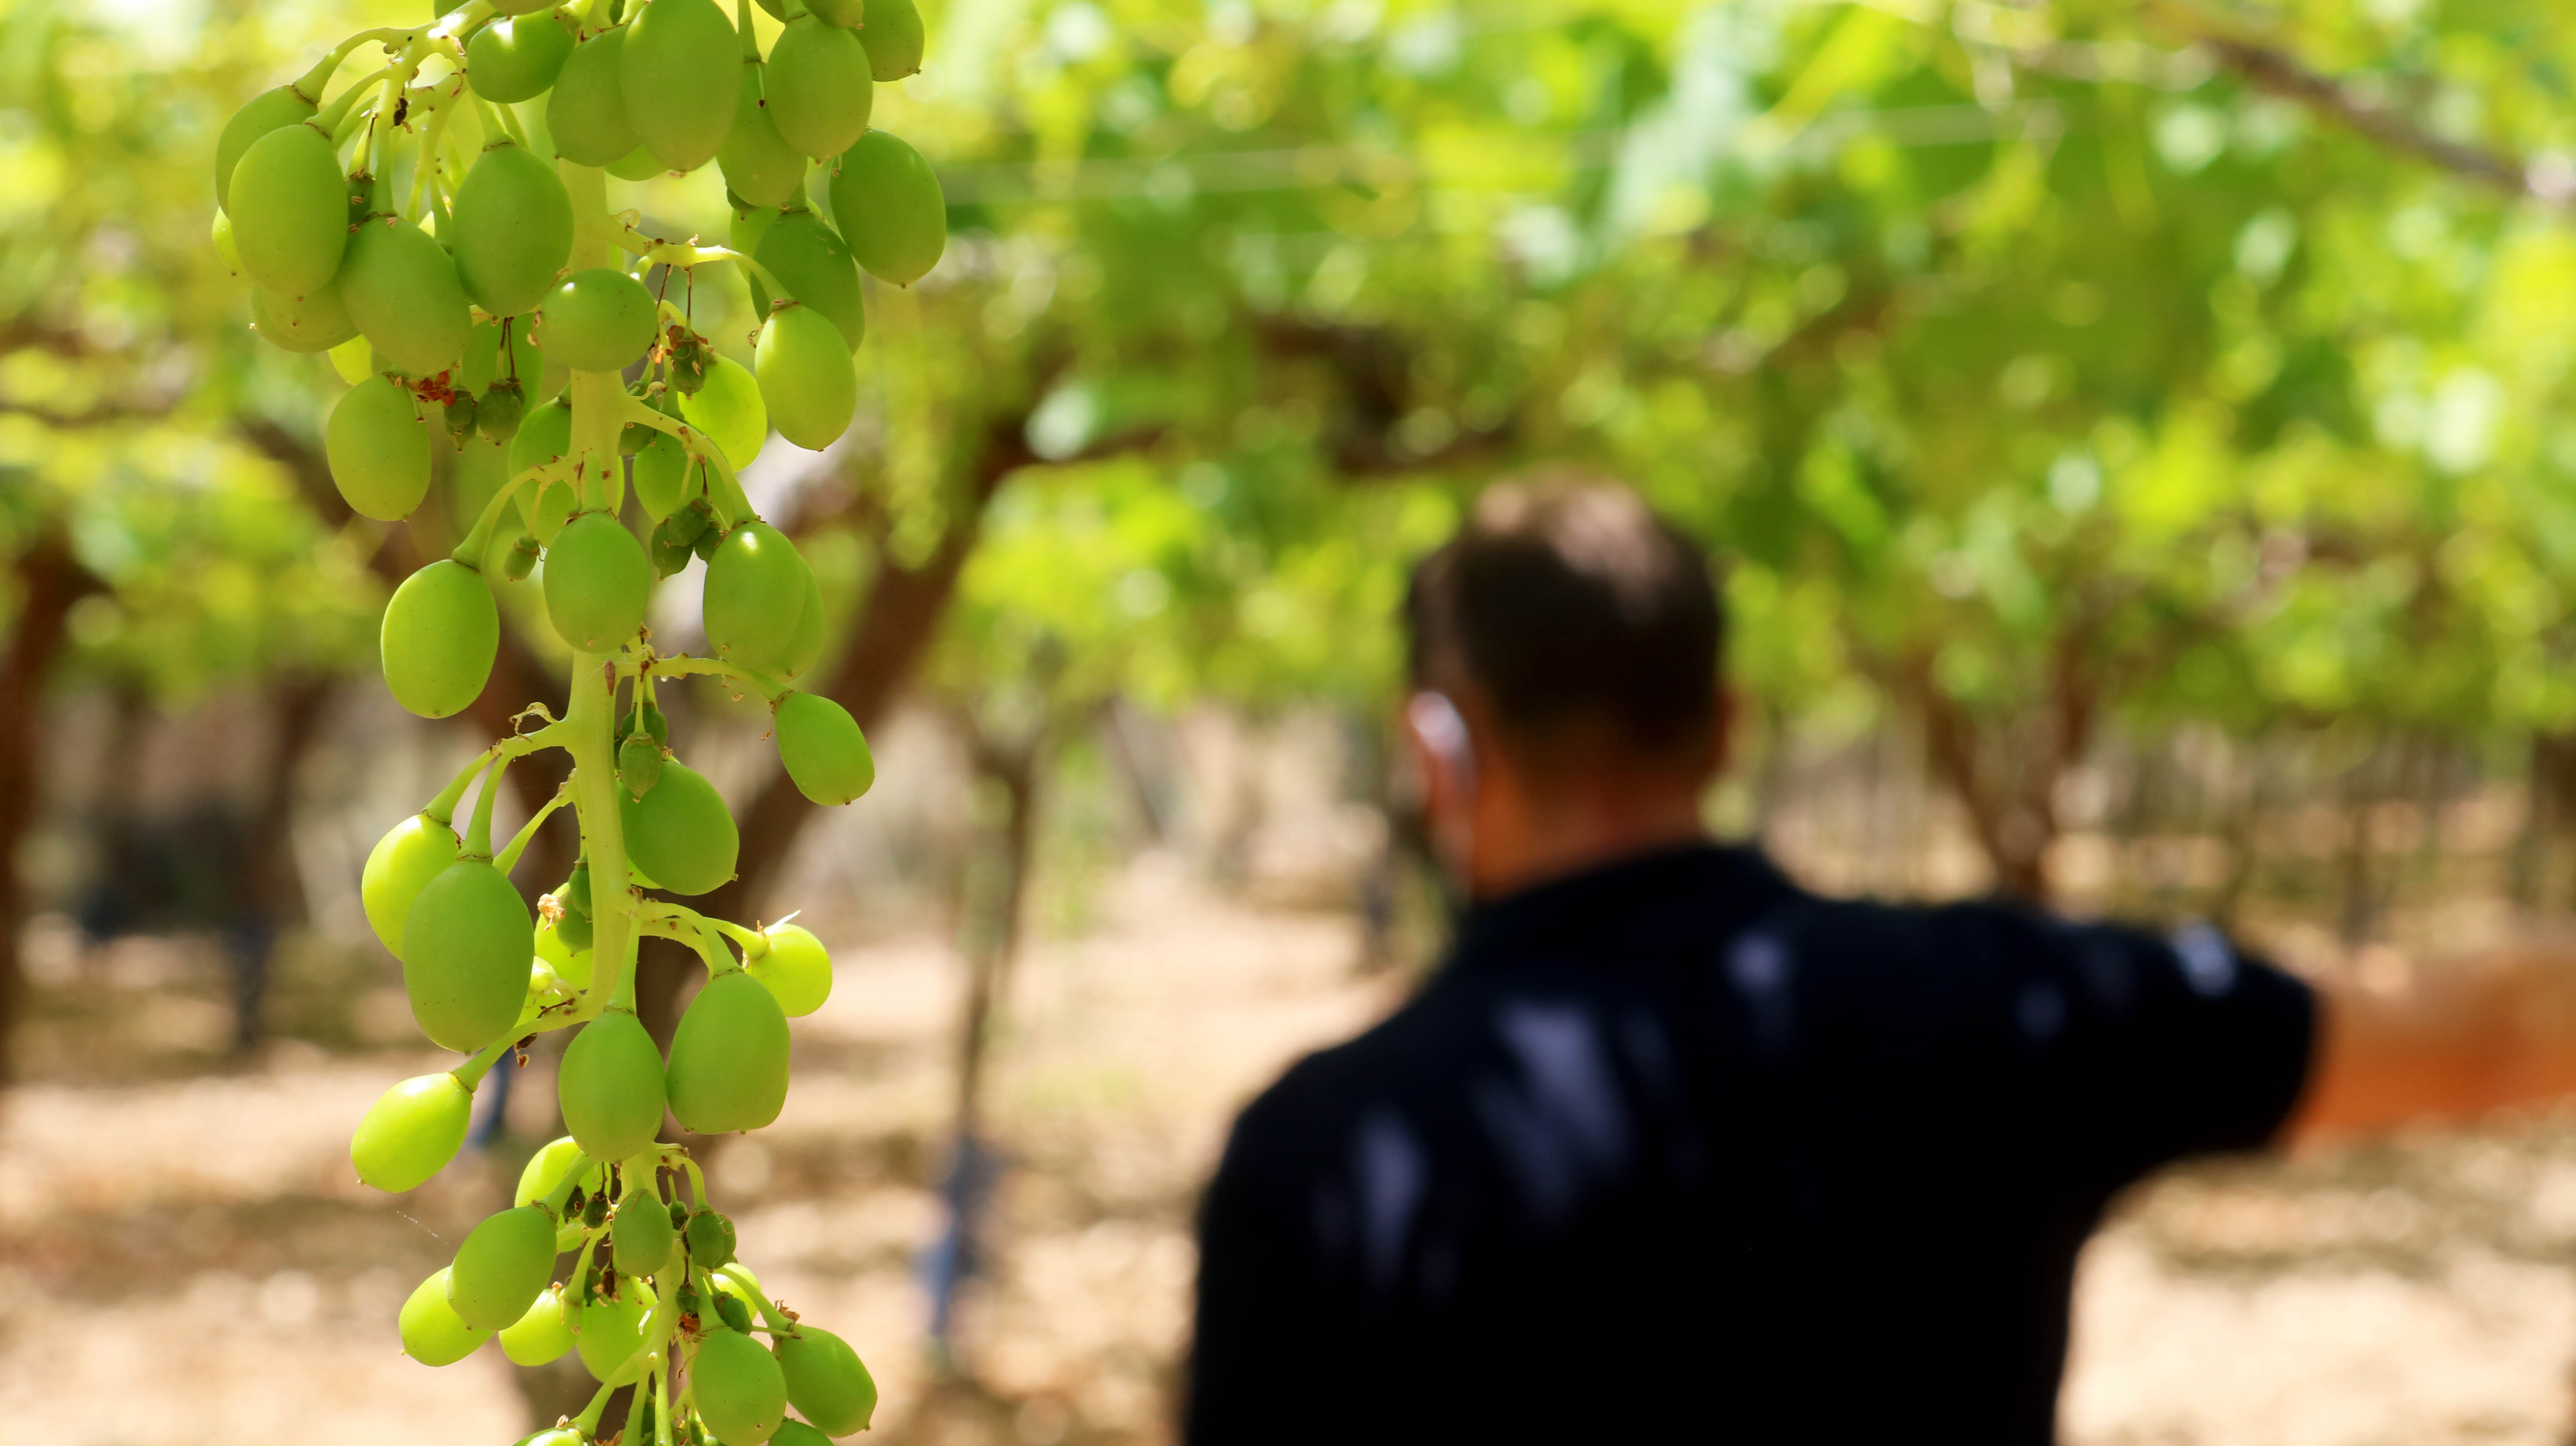 Visita al campo de ensayo de uva de mesa en Hondón de las Nieves #FruitCare